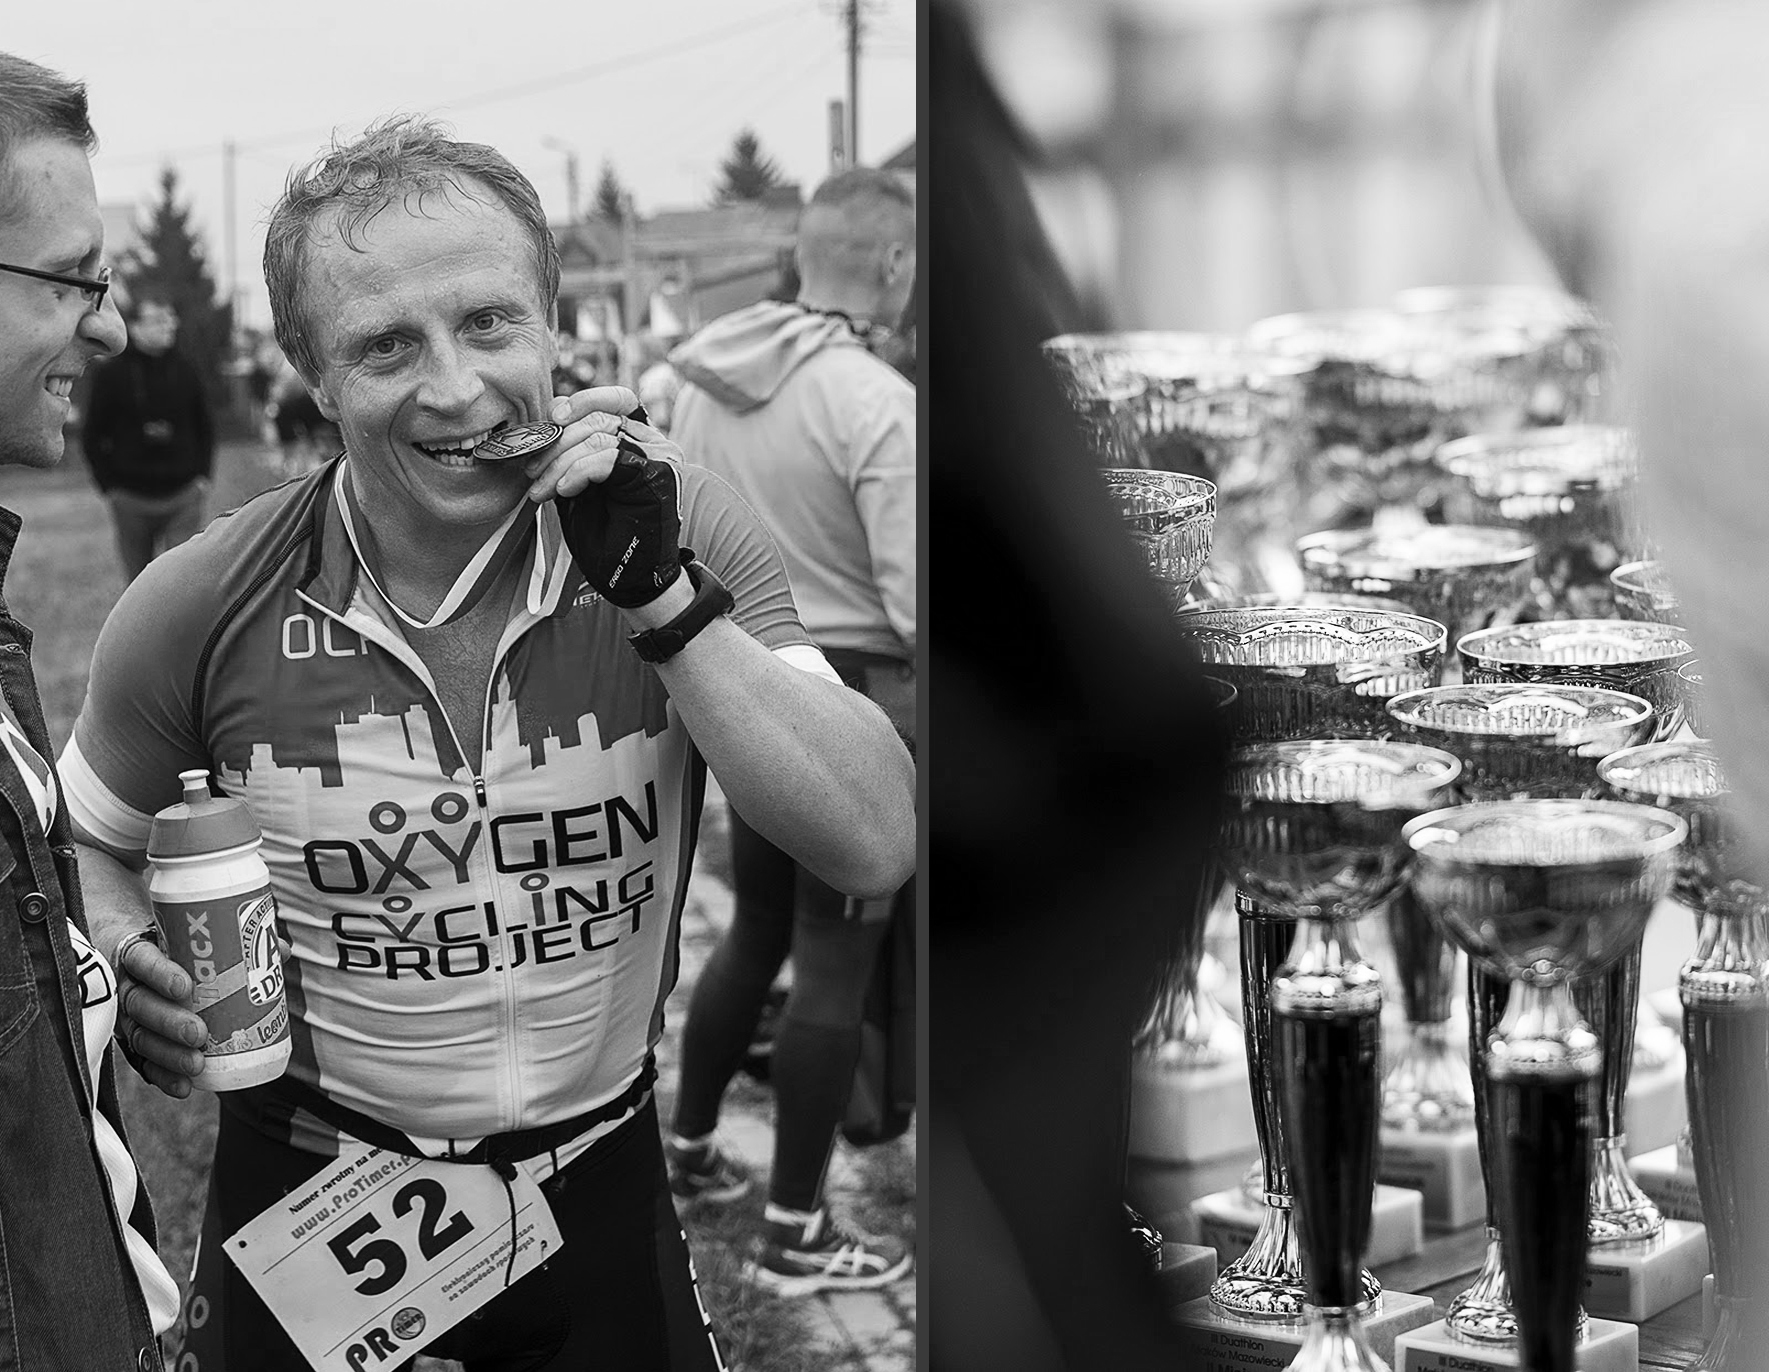 OXYGEN-sekcja-biegowa-rowerowa-indoor-cycling-running-trening-zawoy-Makow-Mazowiecki-2015-duathlon-wyscik-wygrana-zwyciestwo-MILUNA-Ewa-Milun-Walczak-13